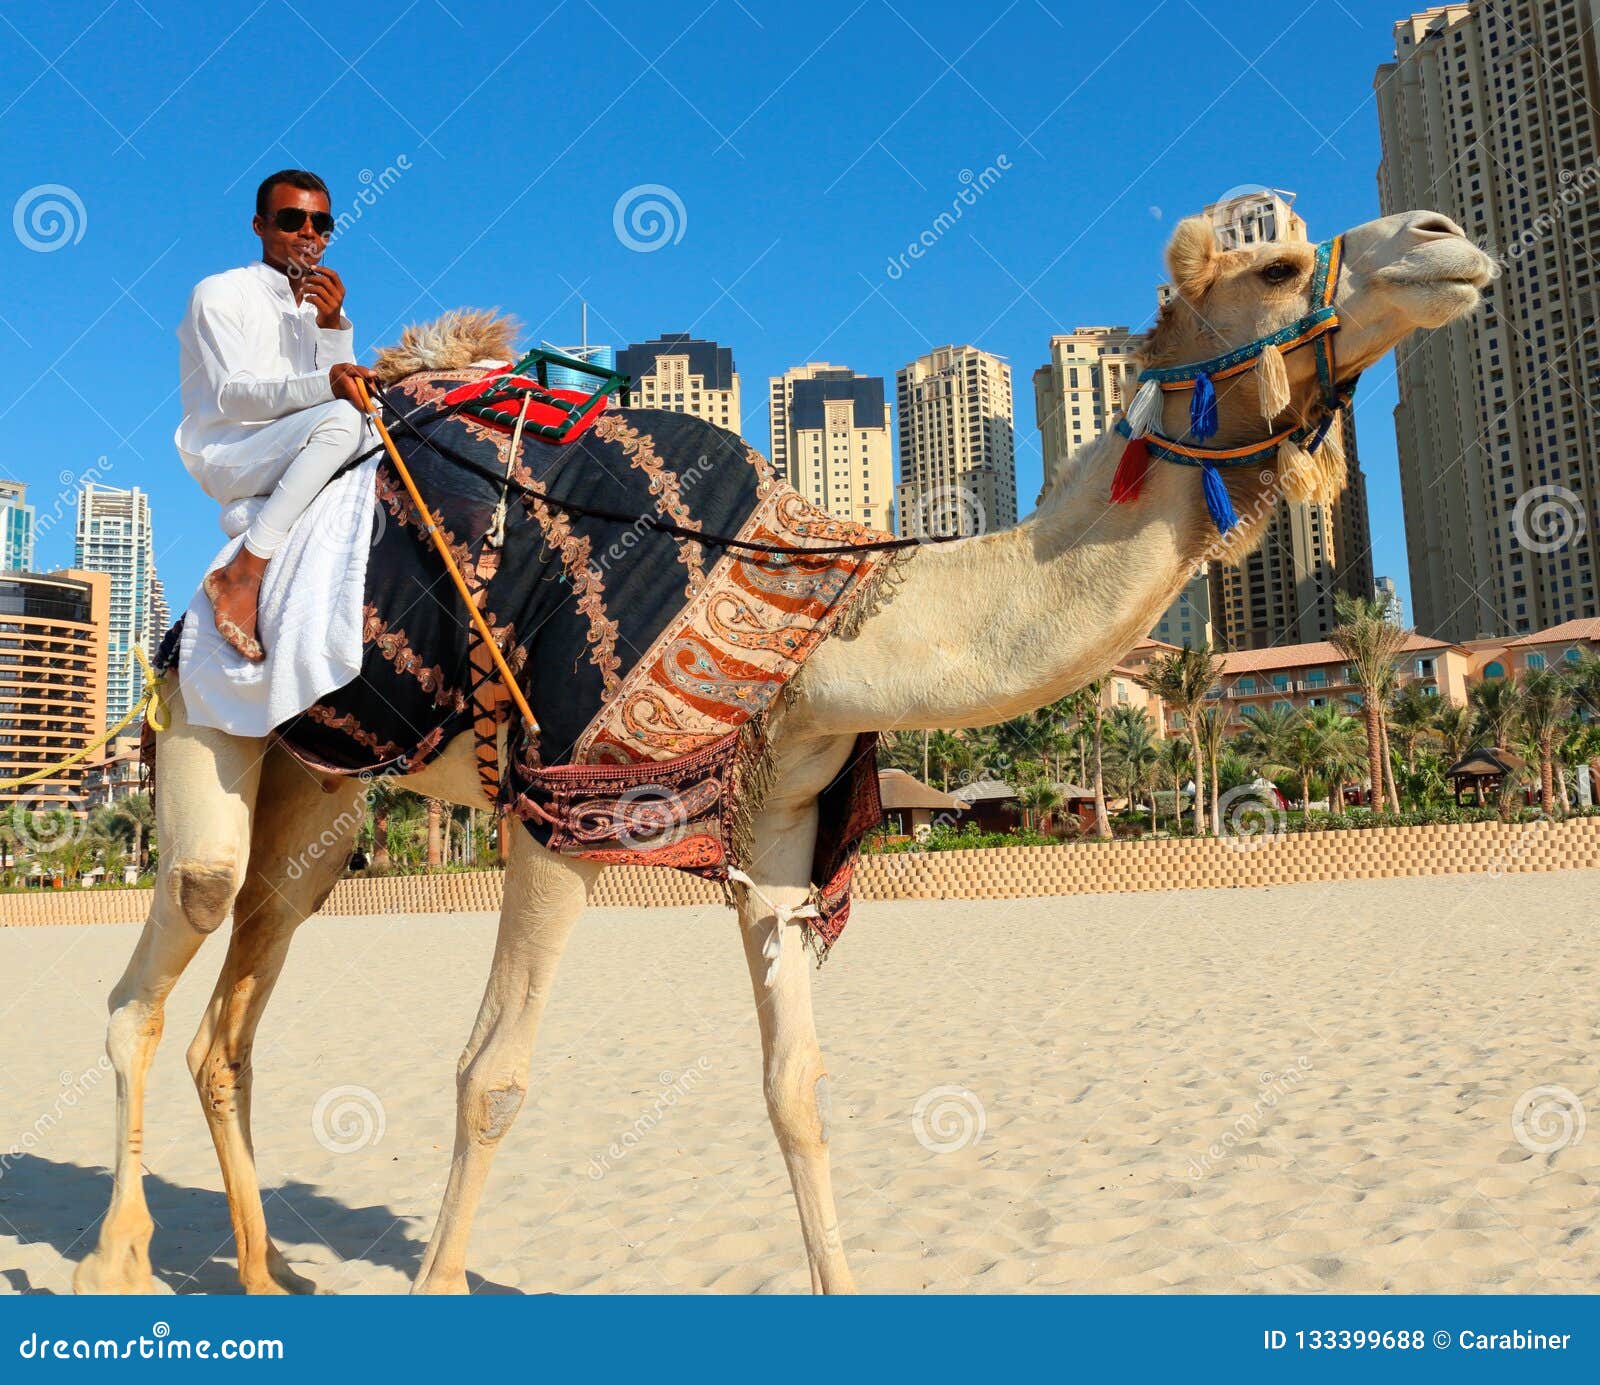 迪拜阿联酋骆驼和骑师在日落时在 Nad Al Sheba 骆驼赛马场训练高清摄影大图-千库网